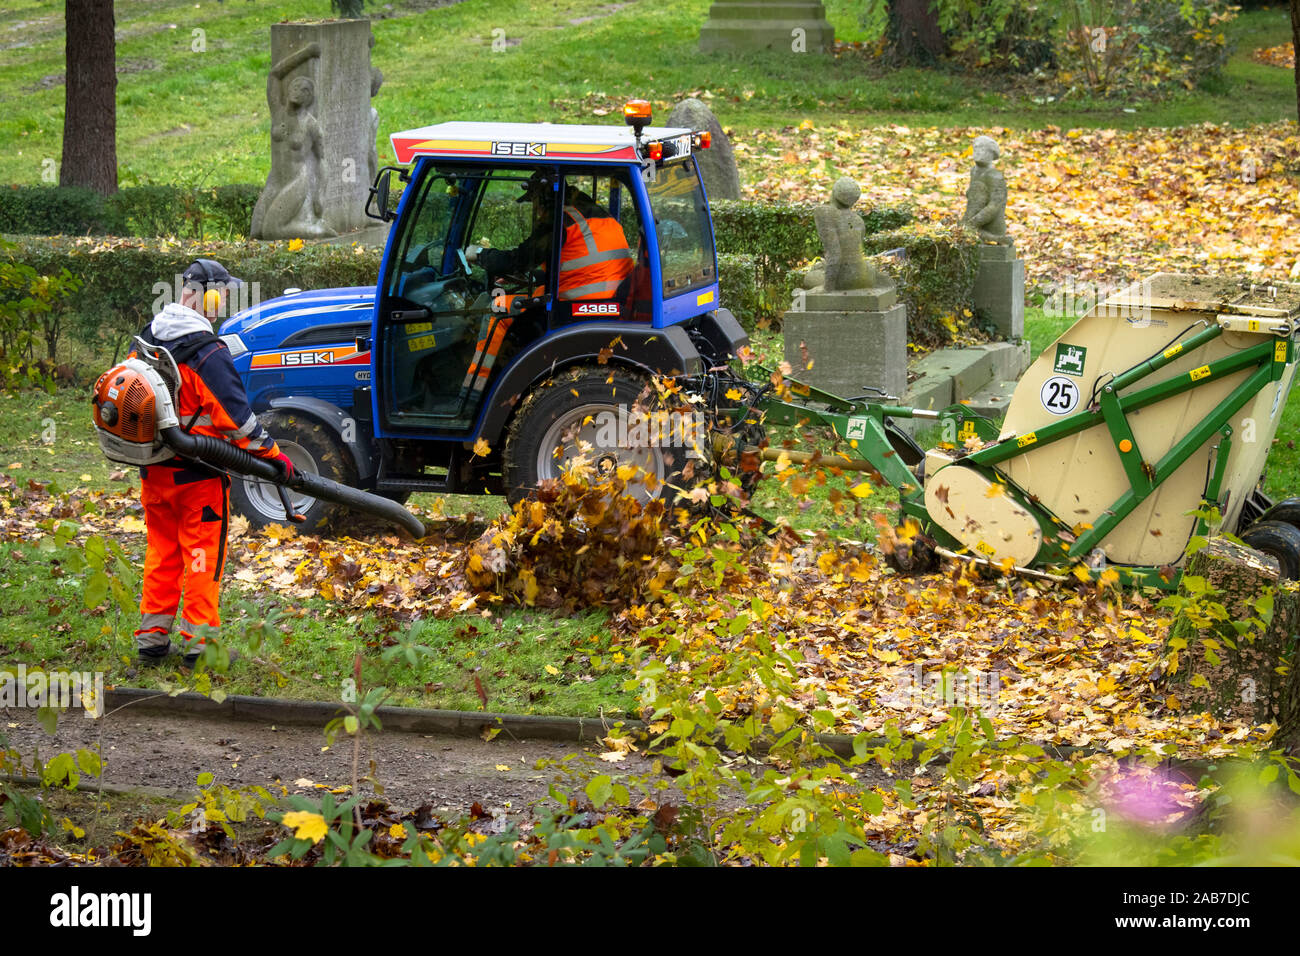 Travailleur avec un sac à dos souffleuse à feuilles et mécanique ramassage de de feuilles dans un parc public dans la ville de Wetter, Rhénanie du Nord-Westphalie, Allemagne. Arbei Banque D'Images